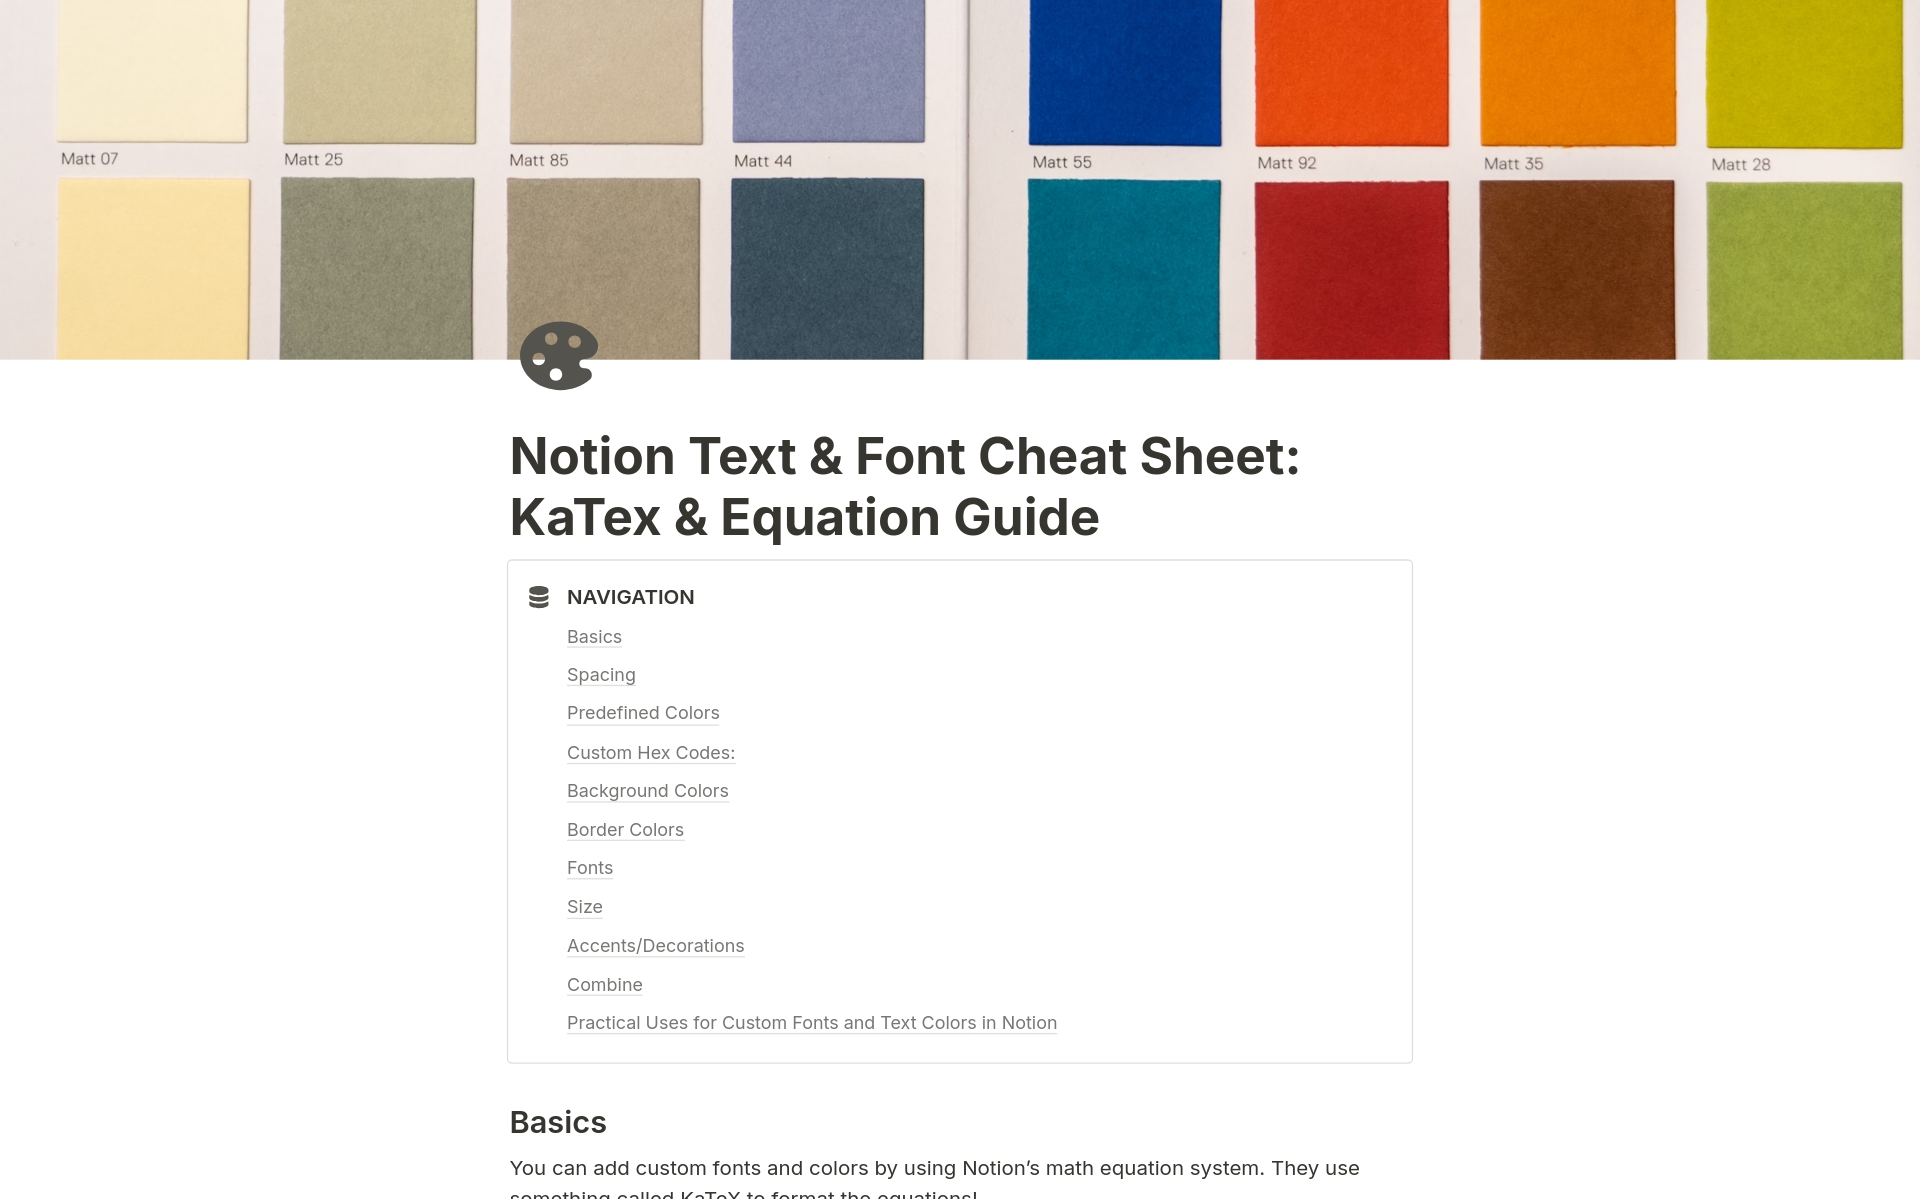 Uma prévia do modelo para Text & Font Cheat Sheet using KaTex